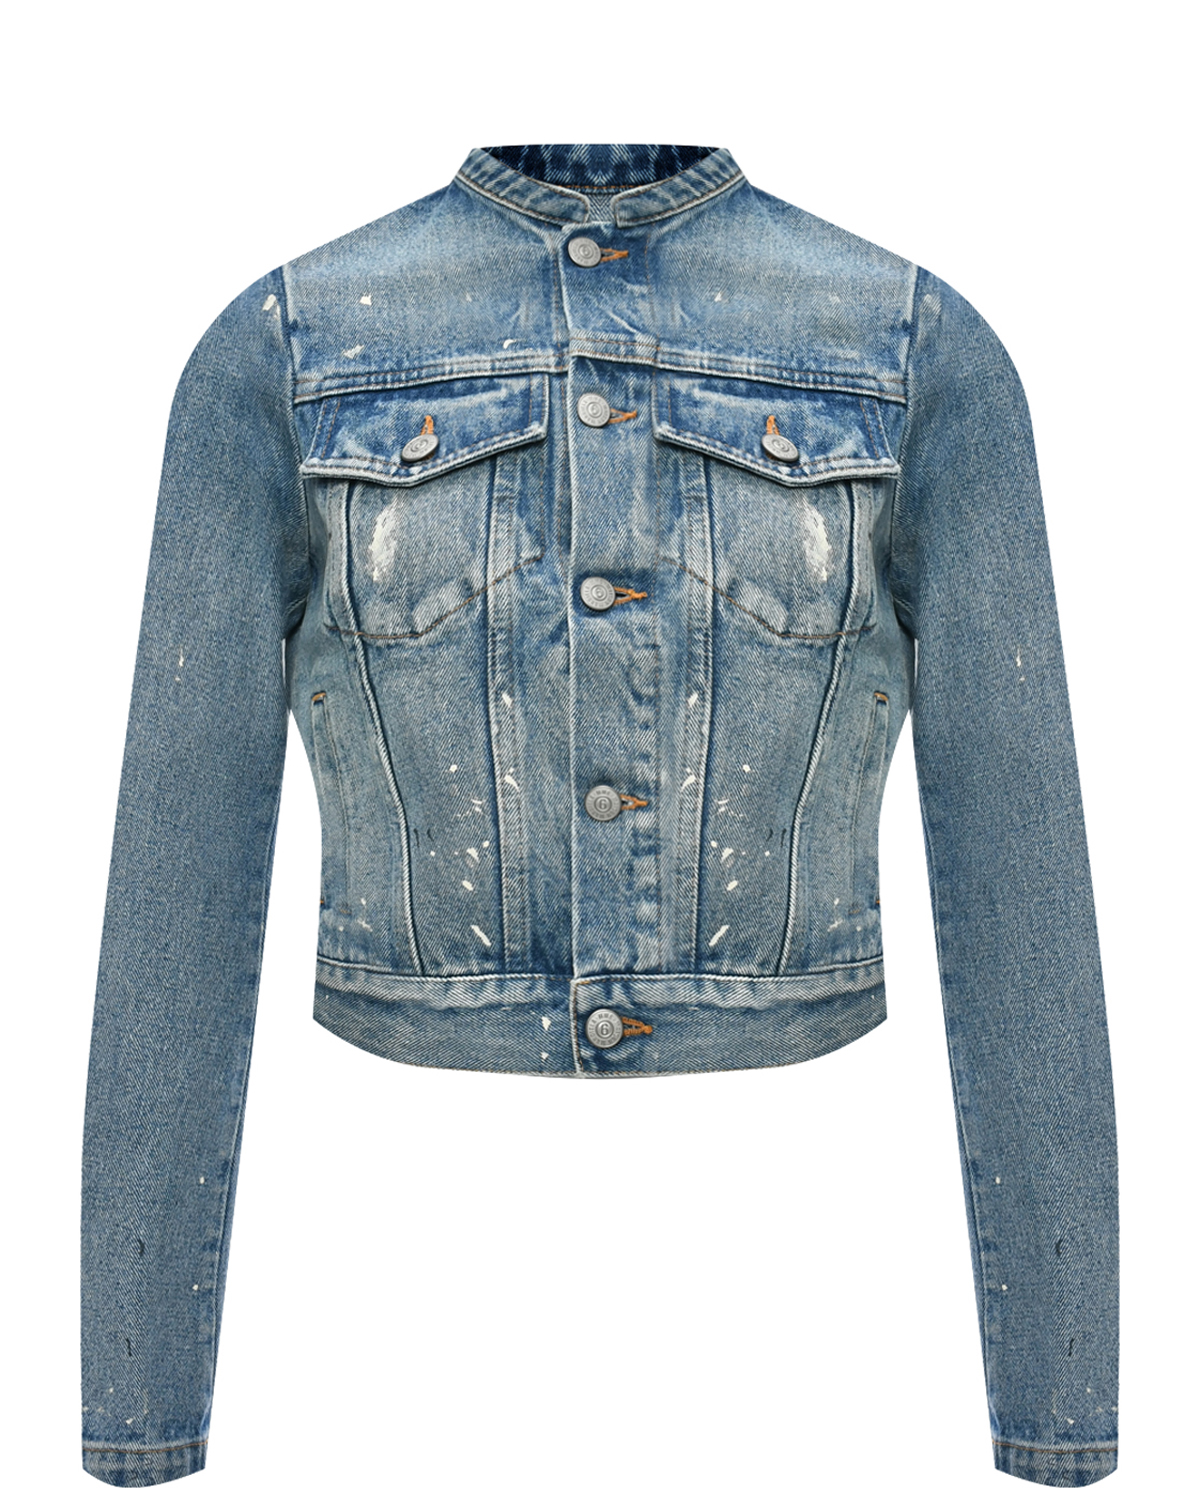 Укороченная джинсовая куртка, голубая MM6 Maison Margiela, размер 40, цвет голубой